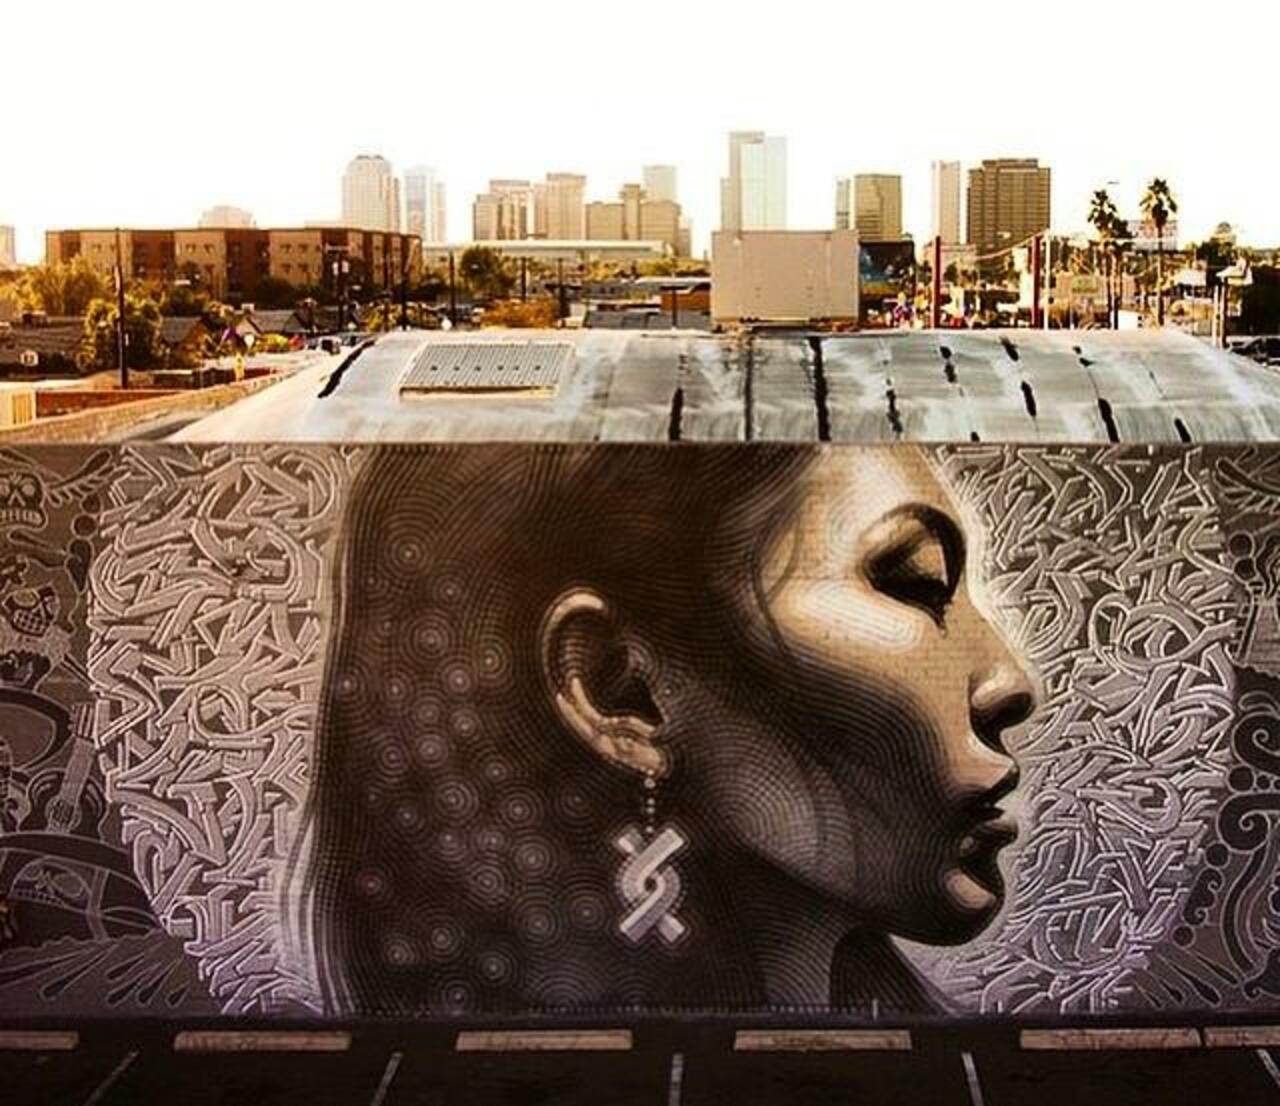 Sistemas4s: Latest Street Art work by El Mac in Phoenix, Arizona

#art #mural #graffiti #streetart http://t.co/RjkdAKblxH